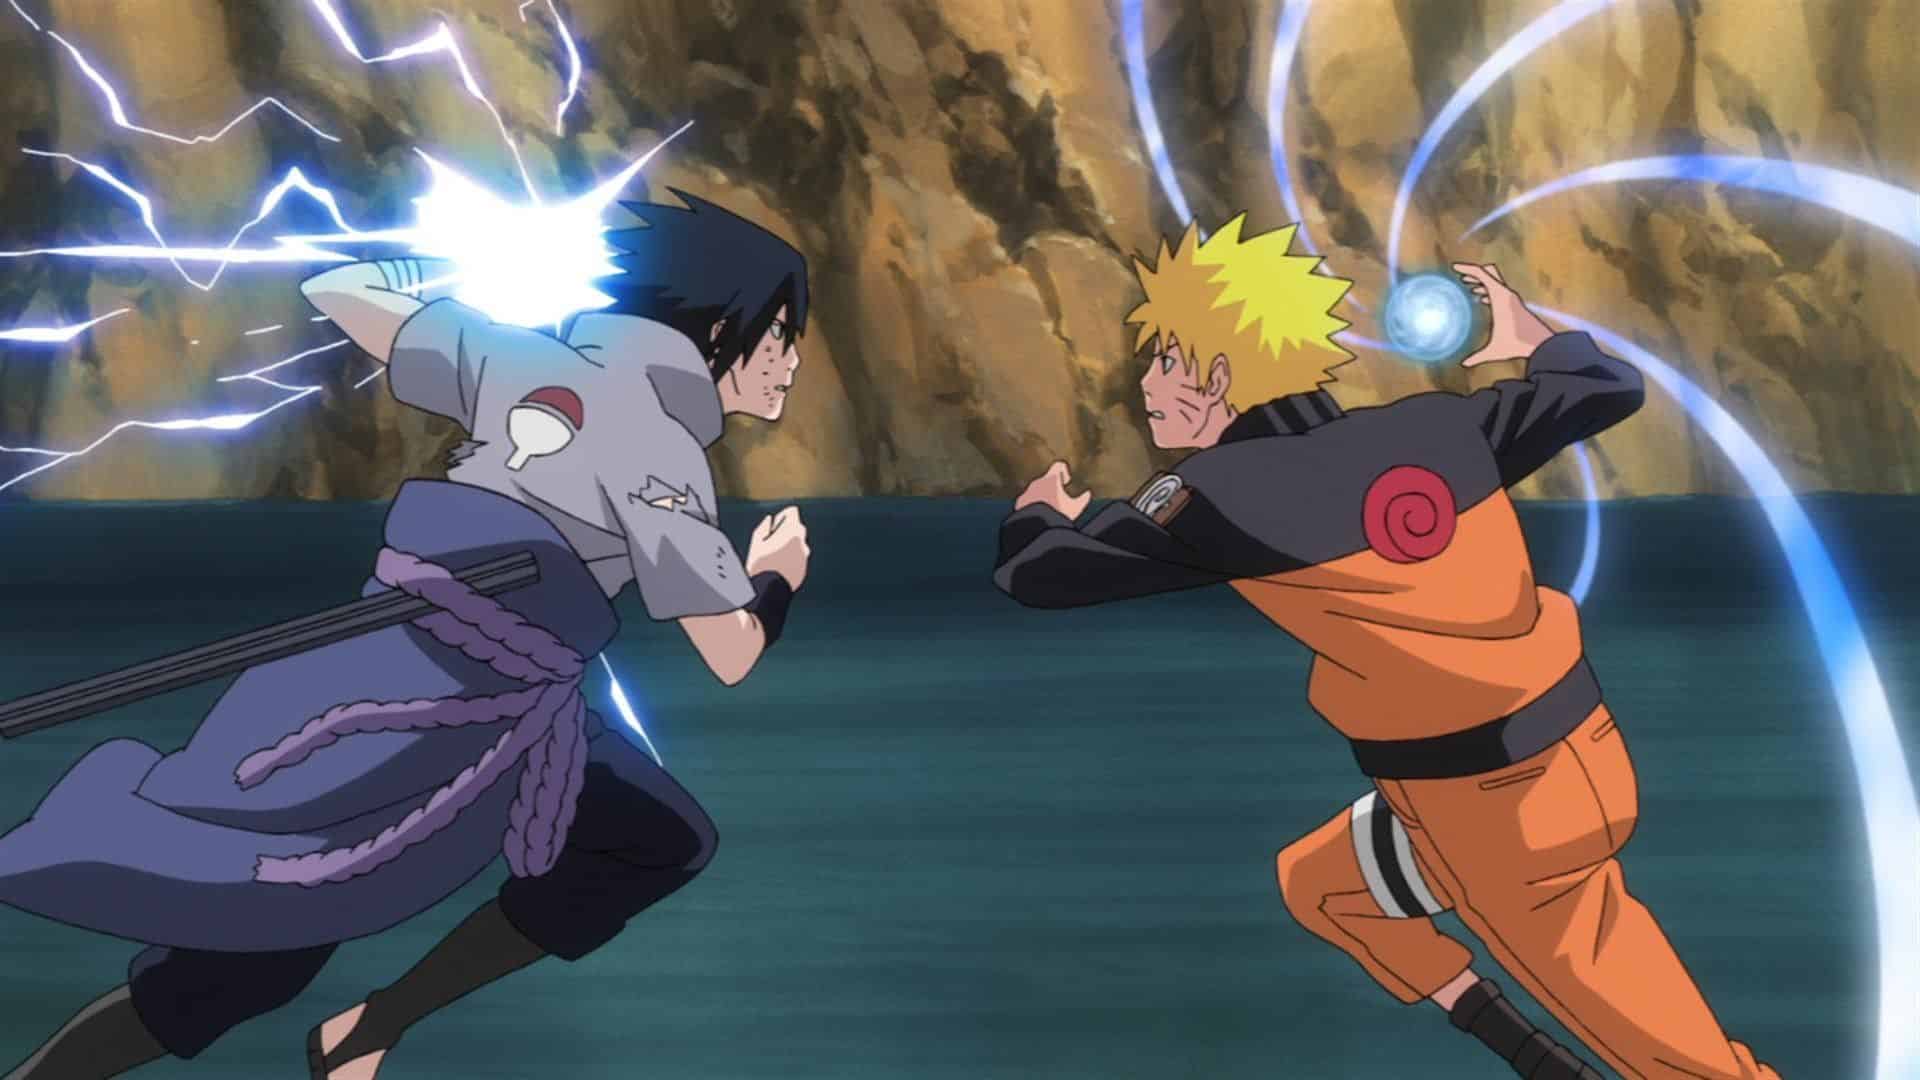 Bạn không thể bỏ qua hình Naruto mới nhất được cập nhật liên tục về các nhân vật và tình tiết trong bộ truyện. Hình ảnh này sẽ giúp bạn cập nhật ngay những tình huống mới hơn và truyền tải được nhiều cảm xúc hơn.